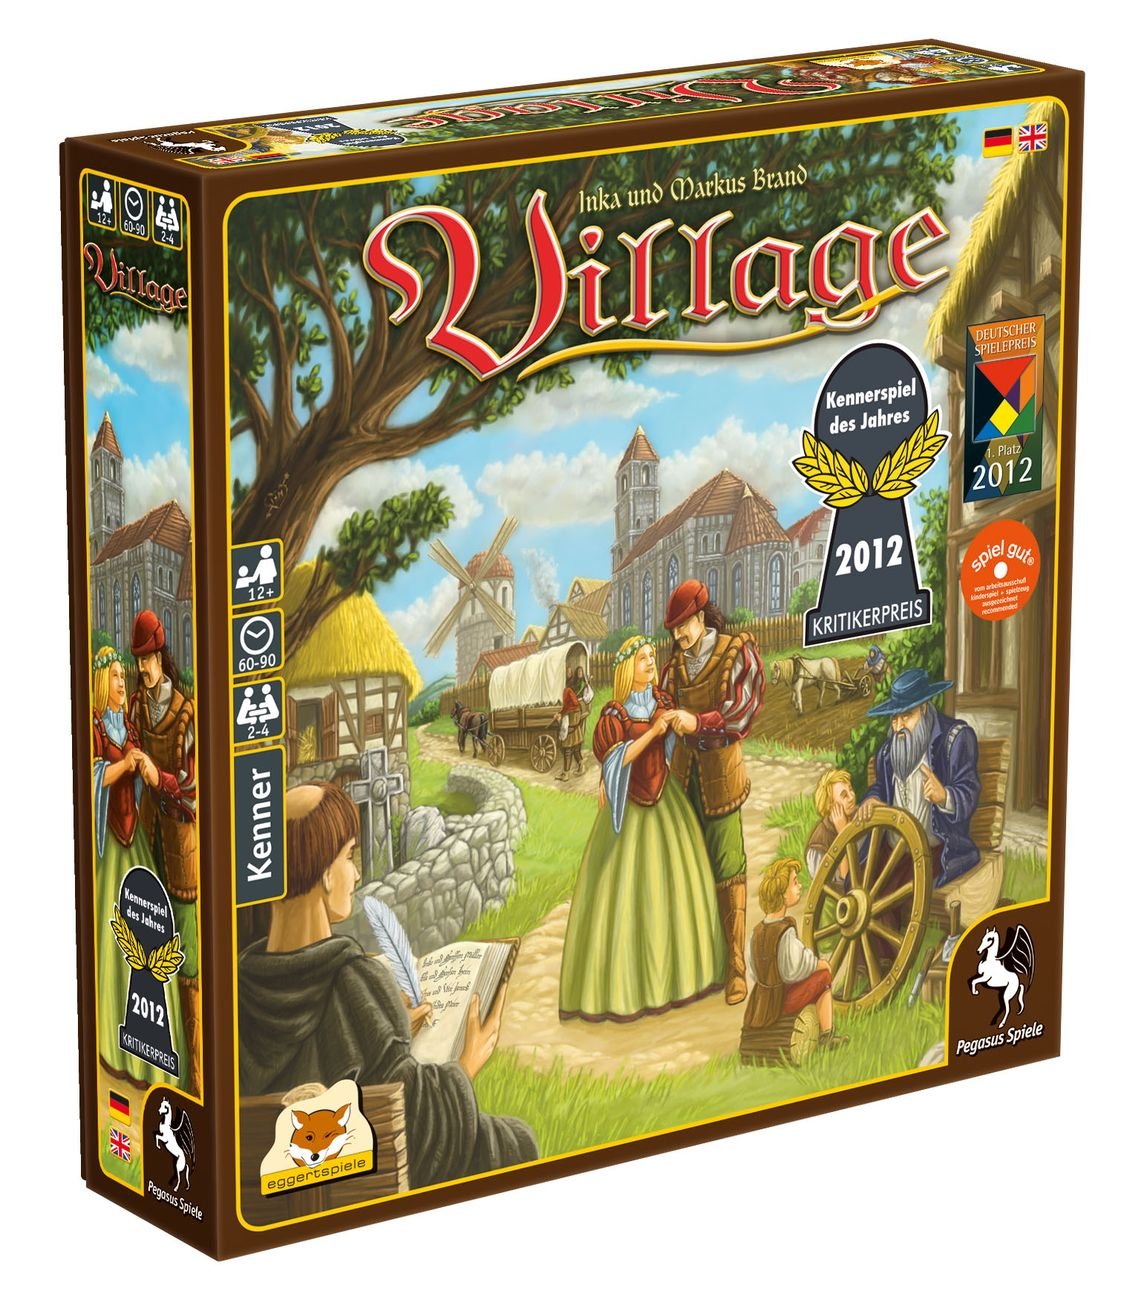 Village Board Game